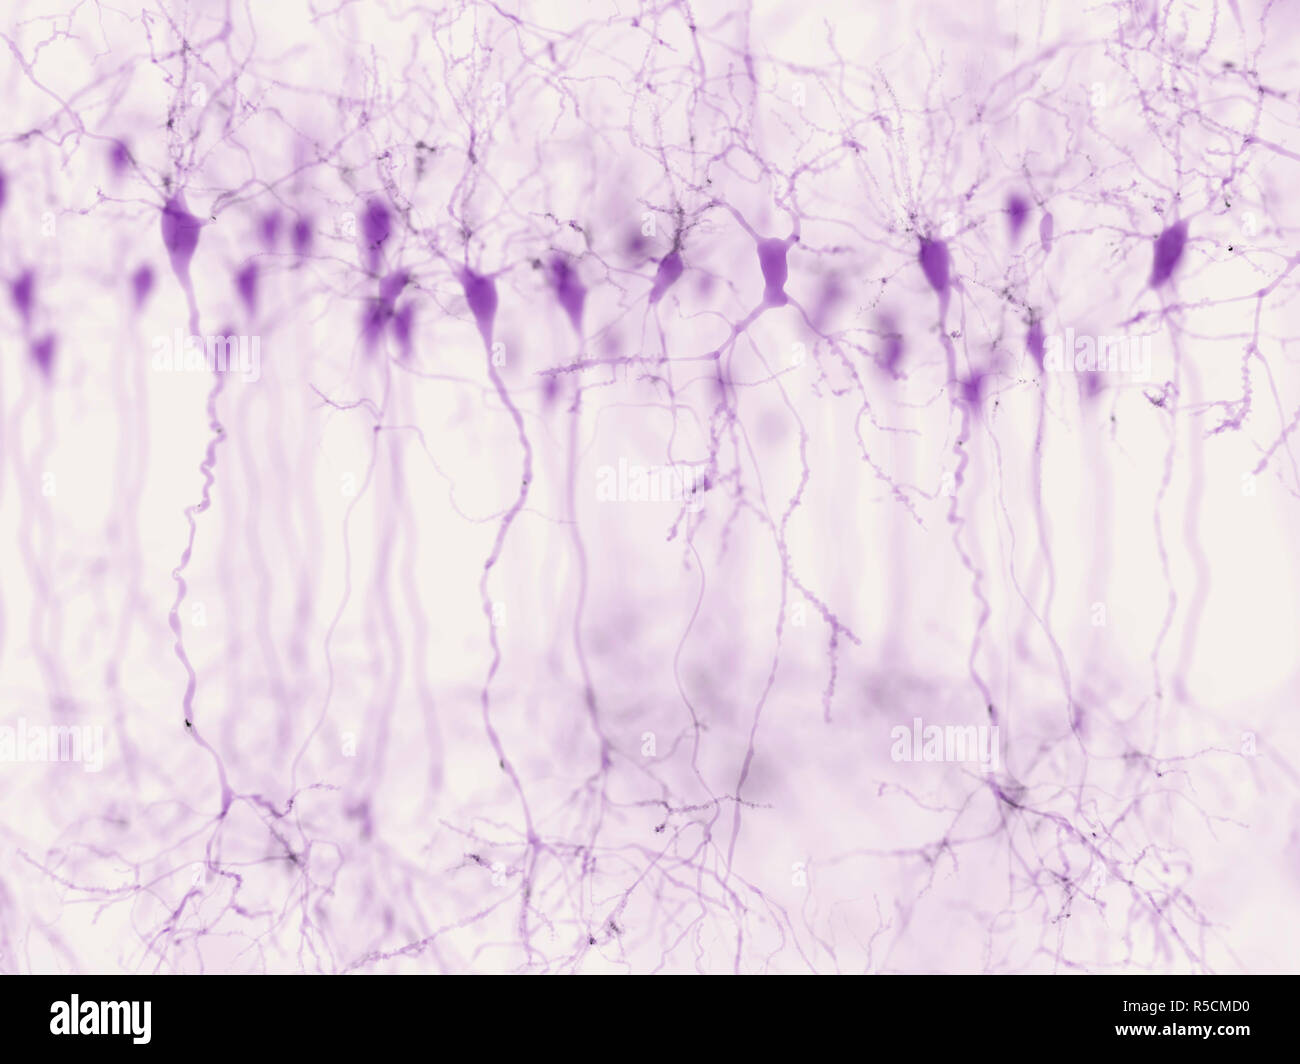 Les neurones pyramidaux dans le cortex cérébral, de l'illustration. Les neurones pyramidaux sont trouvés dans certaines zones du cerveau, notamment le cortex cérébral, l'hippocampe et l'amygdale. Ici, l'illustration montre les signaux synaptiques mis en évidence à l'aide d'une technique de microscopie à fluorescence. Banque D'Images